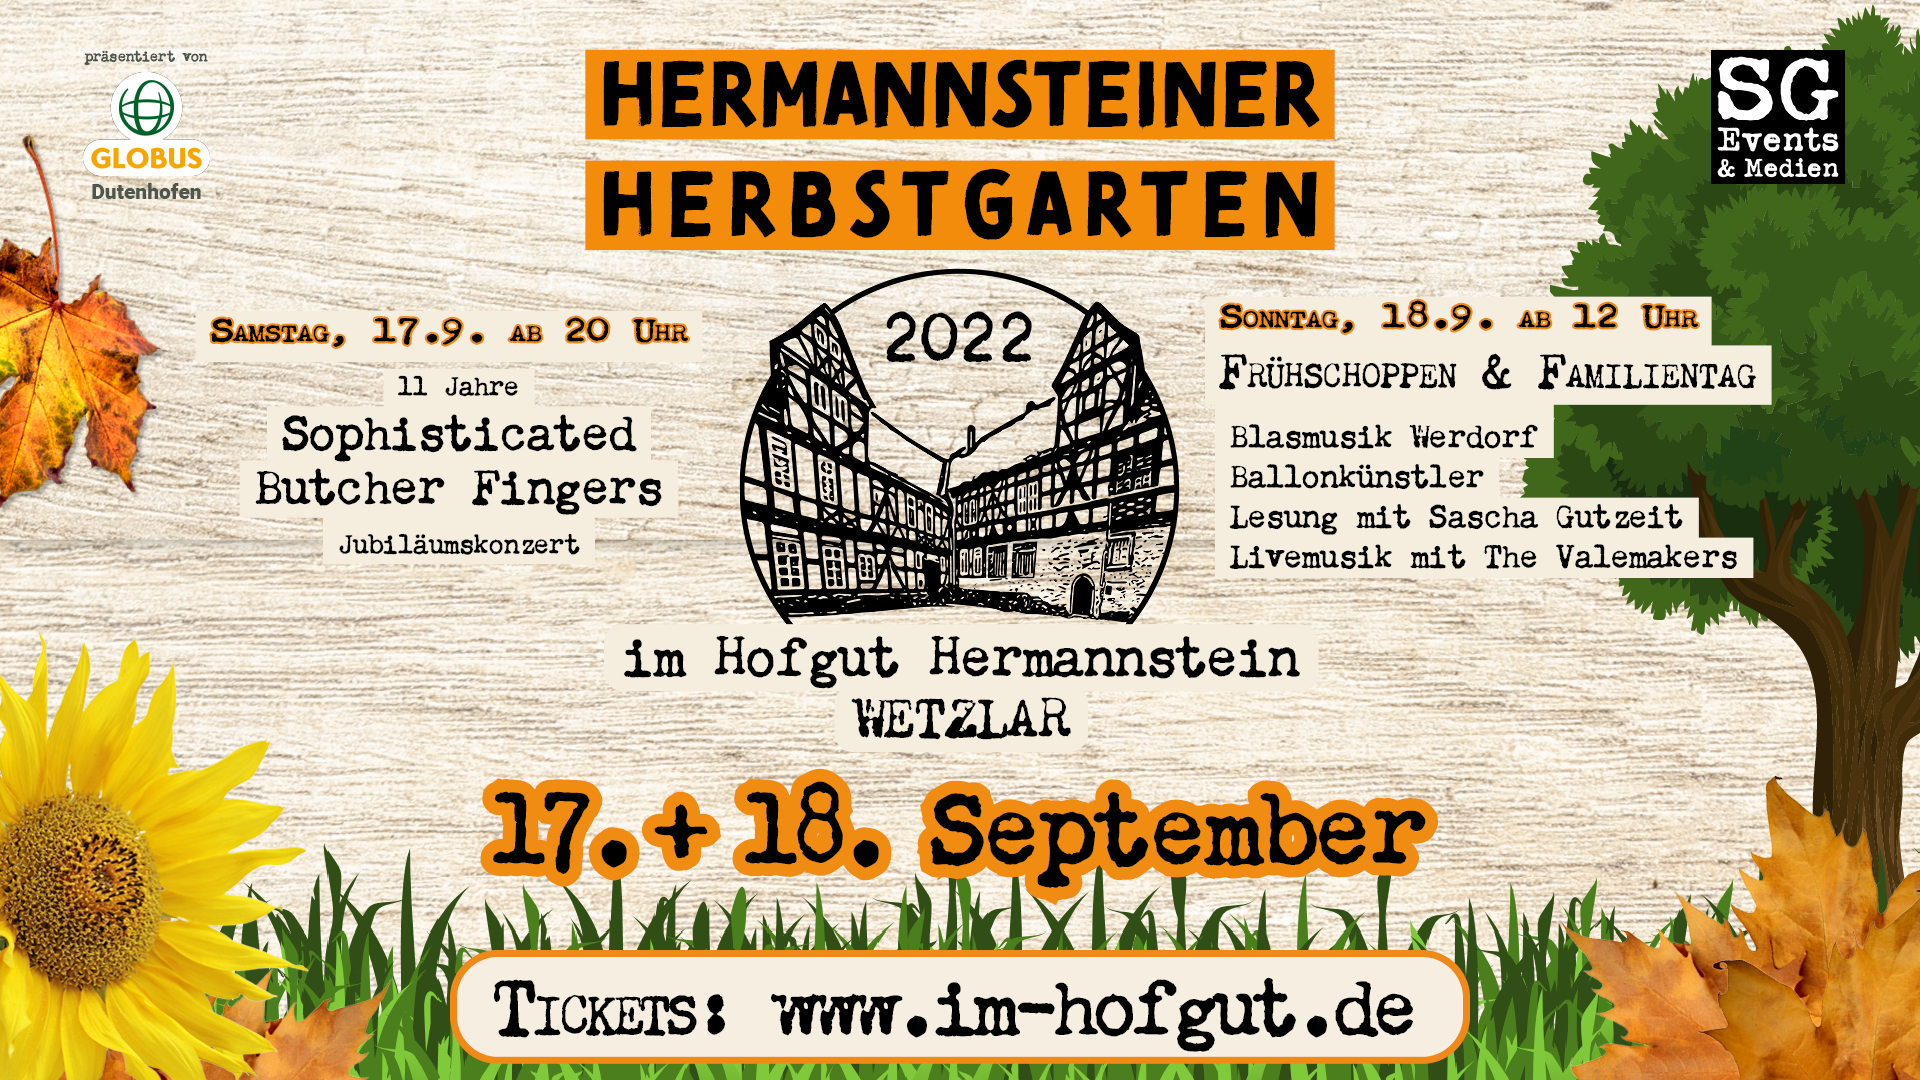 Hermannsteiner Herbstgarten 2022